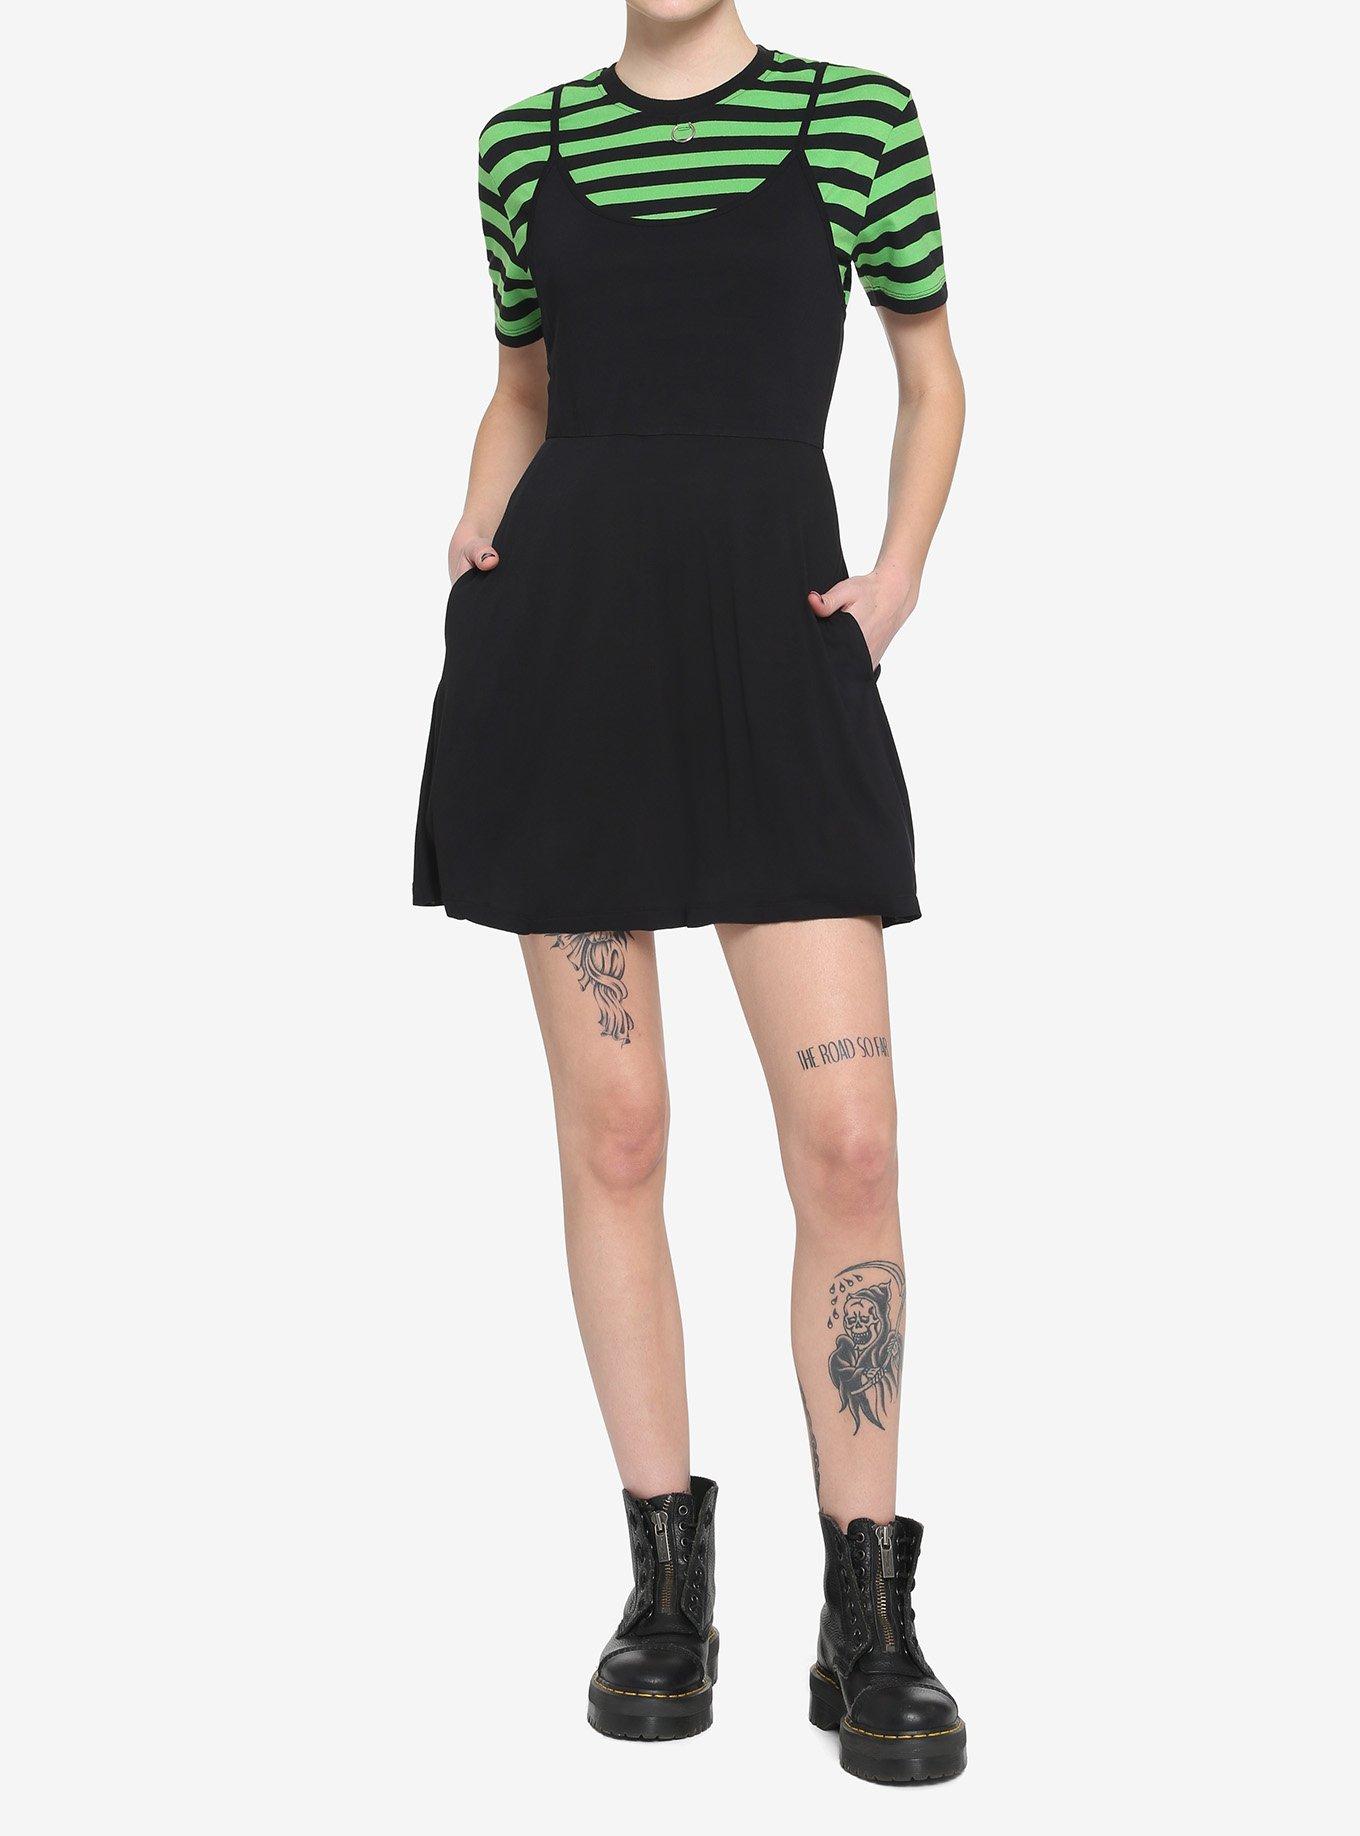 Black & Green Stripe Twofer Skater Dress, STRIPES, alternate